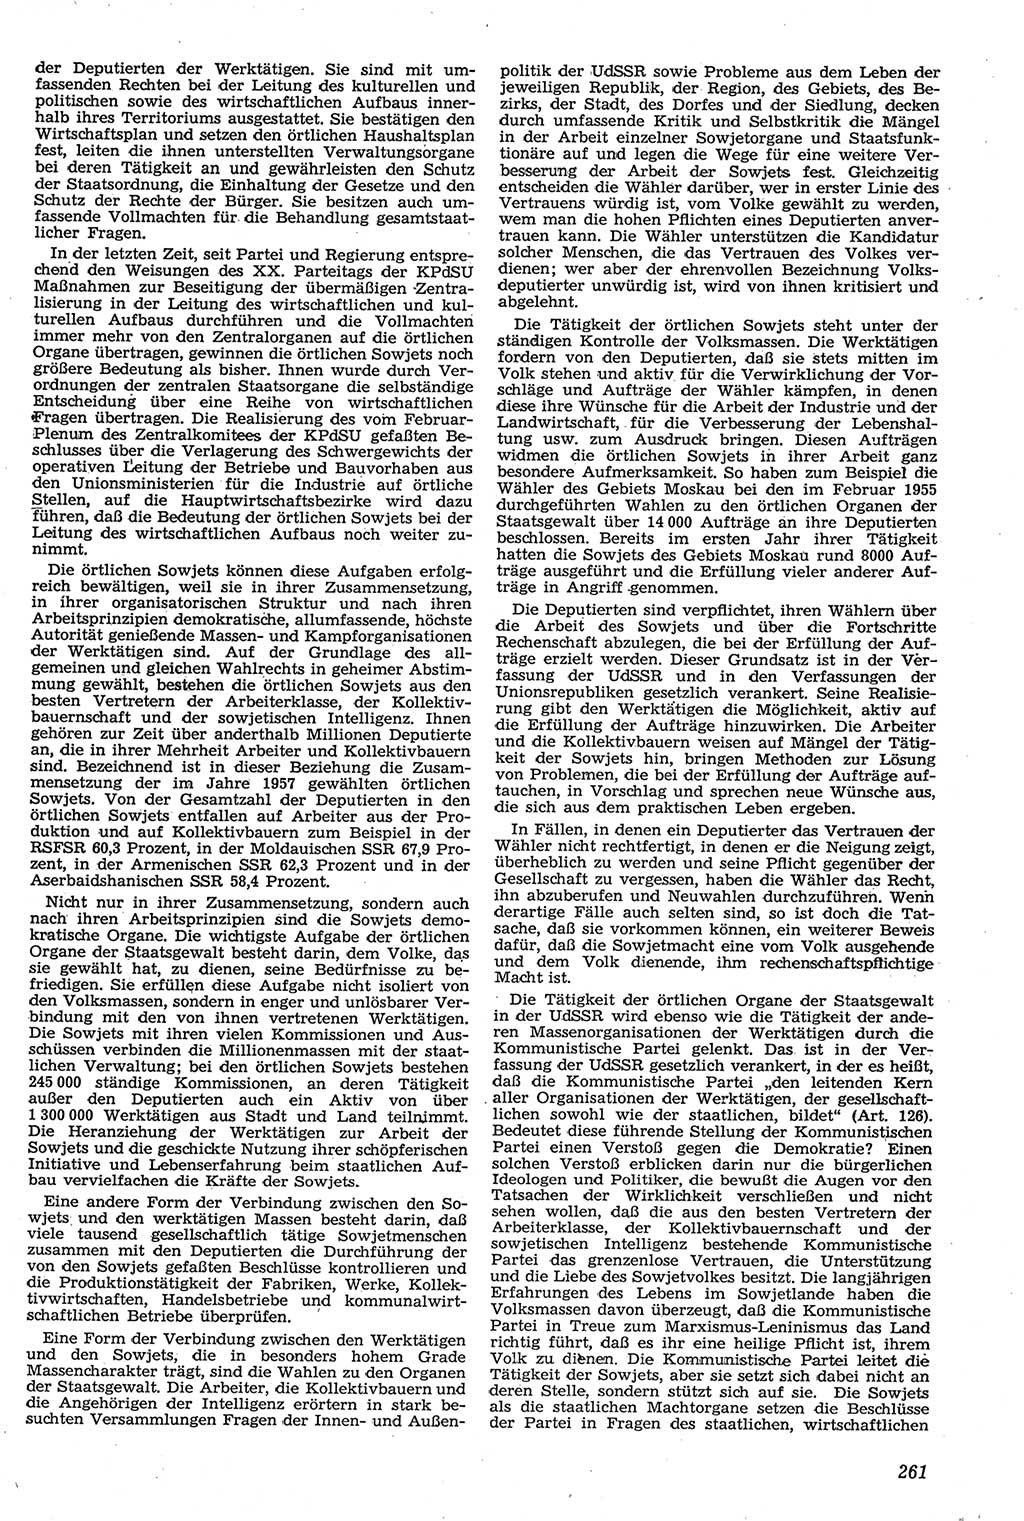 Neue Justiz (NJ), Zeitschrift für Recht und Rechtswissenschaft [Deutsche Demokratische Republik (DDR)], 11. Jahrgang 1957, Seite 261 (NJ DDR 1957, S. 261)